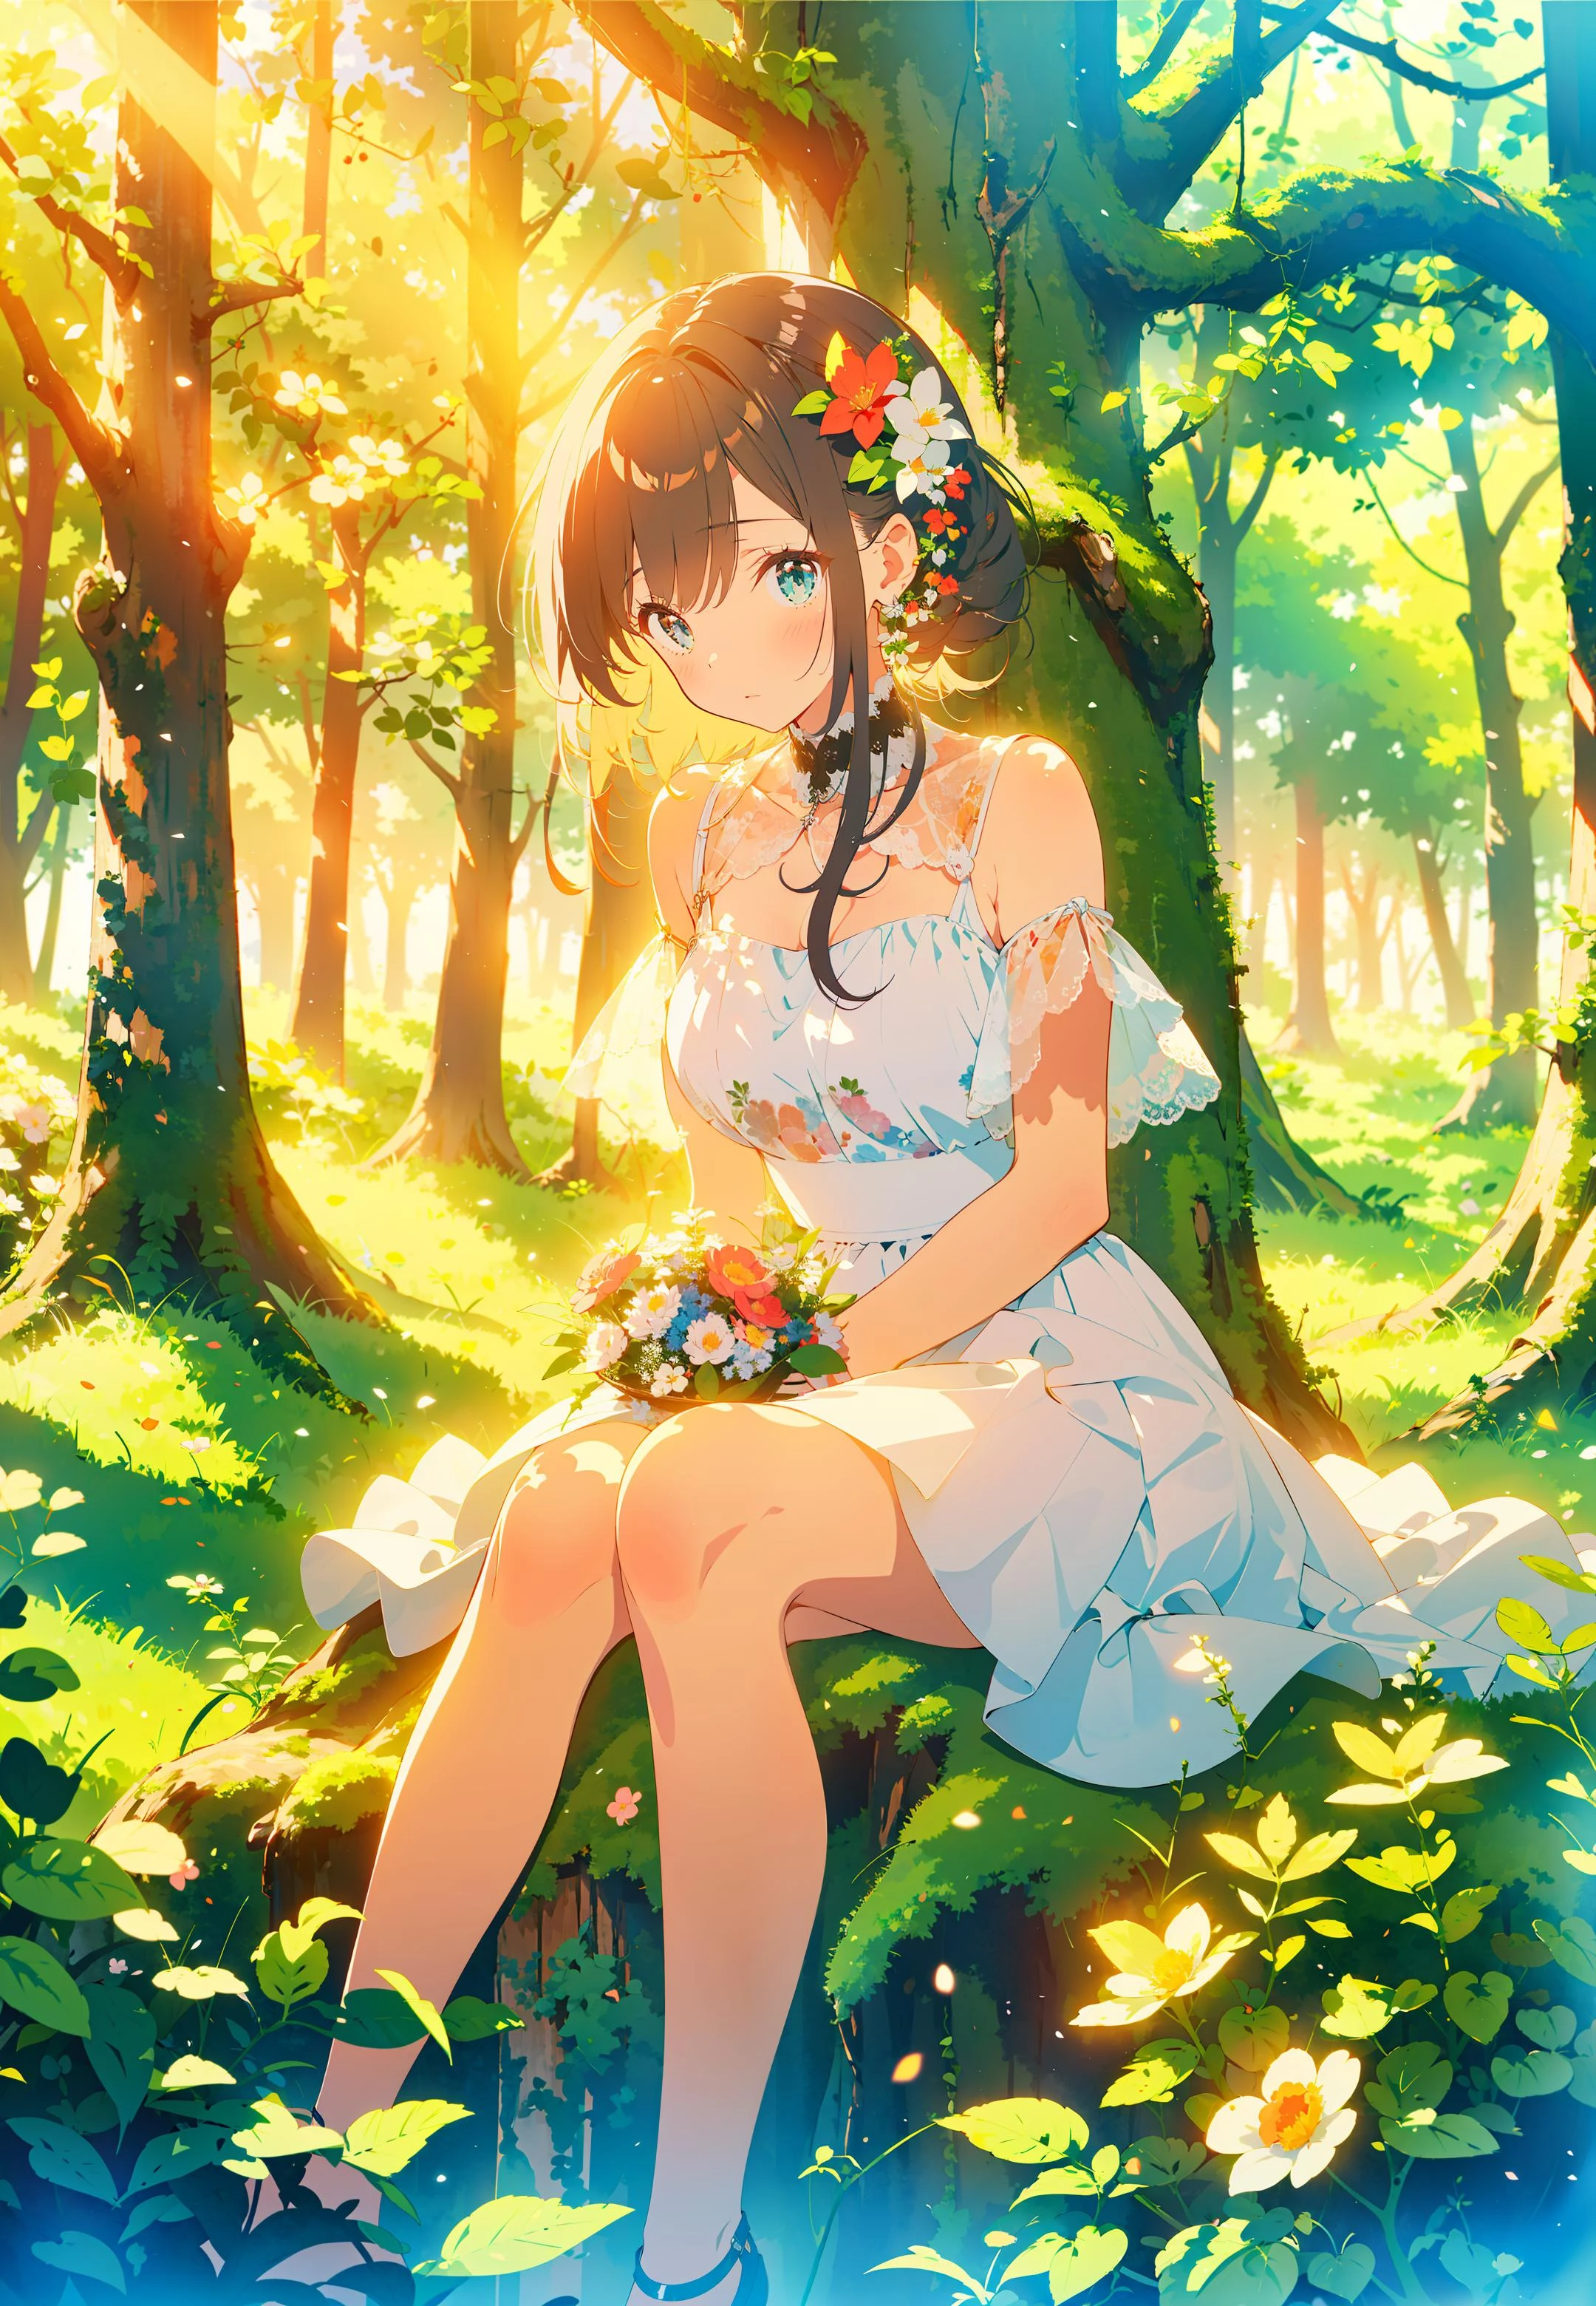 杰作,最好的质量,ï¼Œ 1女孩, 坐在草地上, 花朵, holding 花朵, 暖色灯光, 白色礼服, 模糊的前景, (森林:1.5)